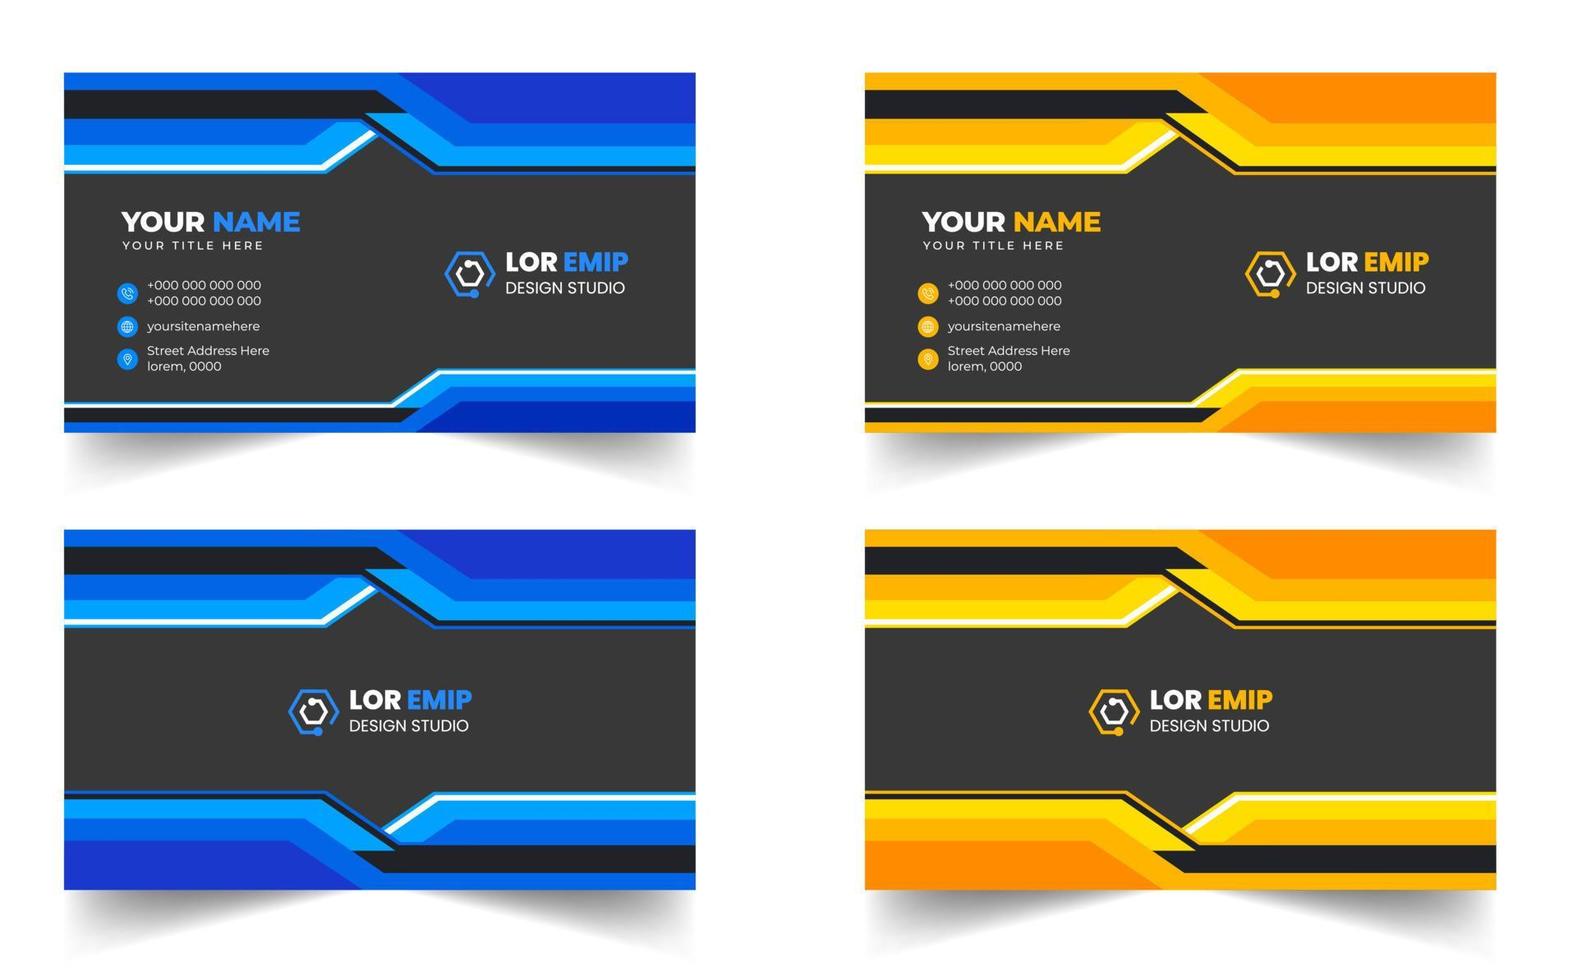 plantilla de diseño de tarjeta de visita creativa moderna azul y amarilla. diseño de tarjeta de visita moderna de forma única. vector